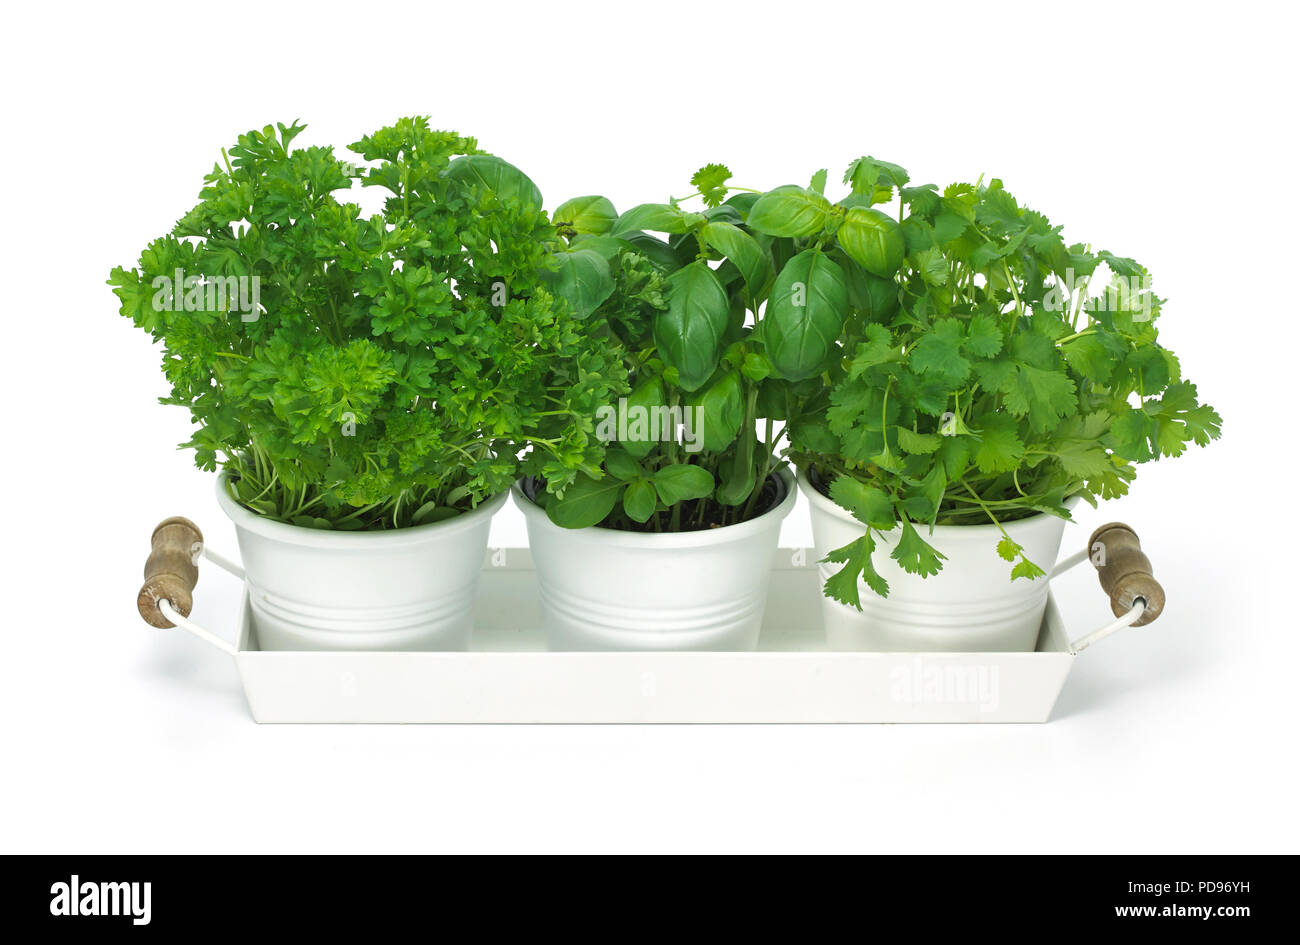 Trio of herb pots Stock Photo